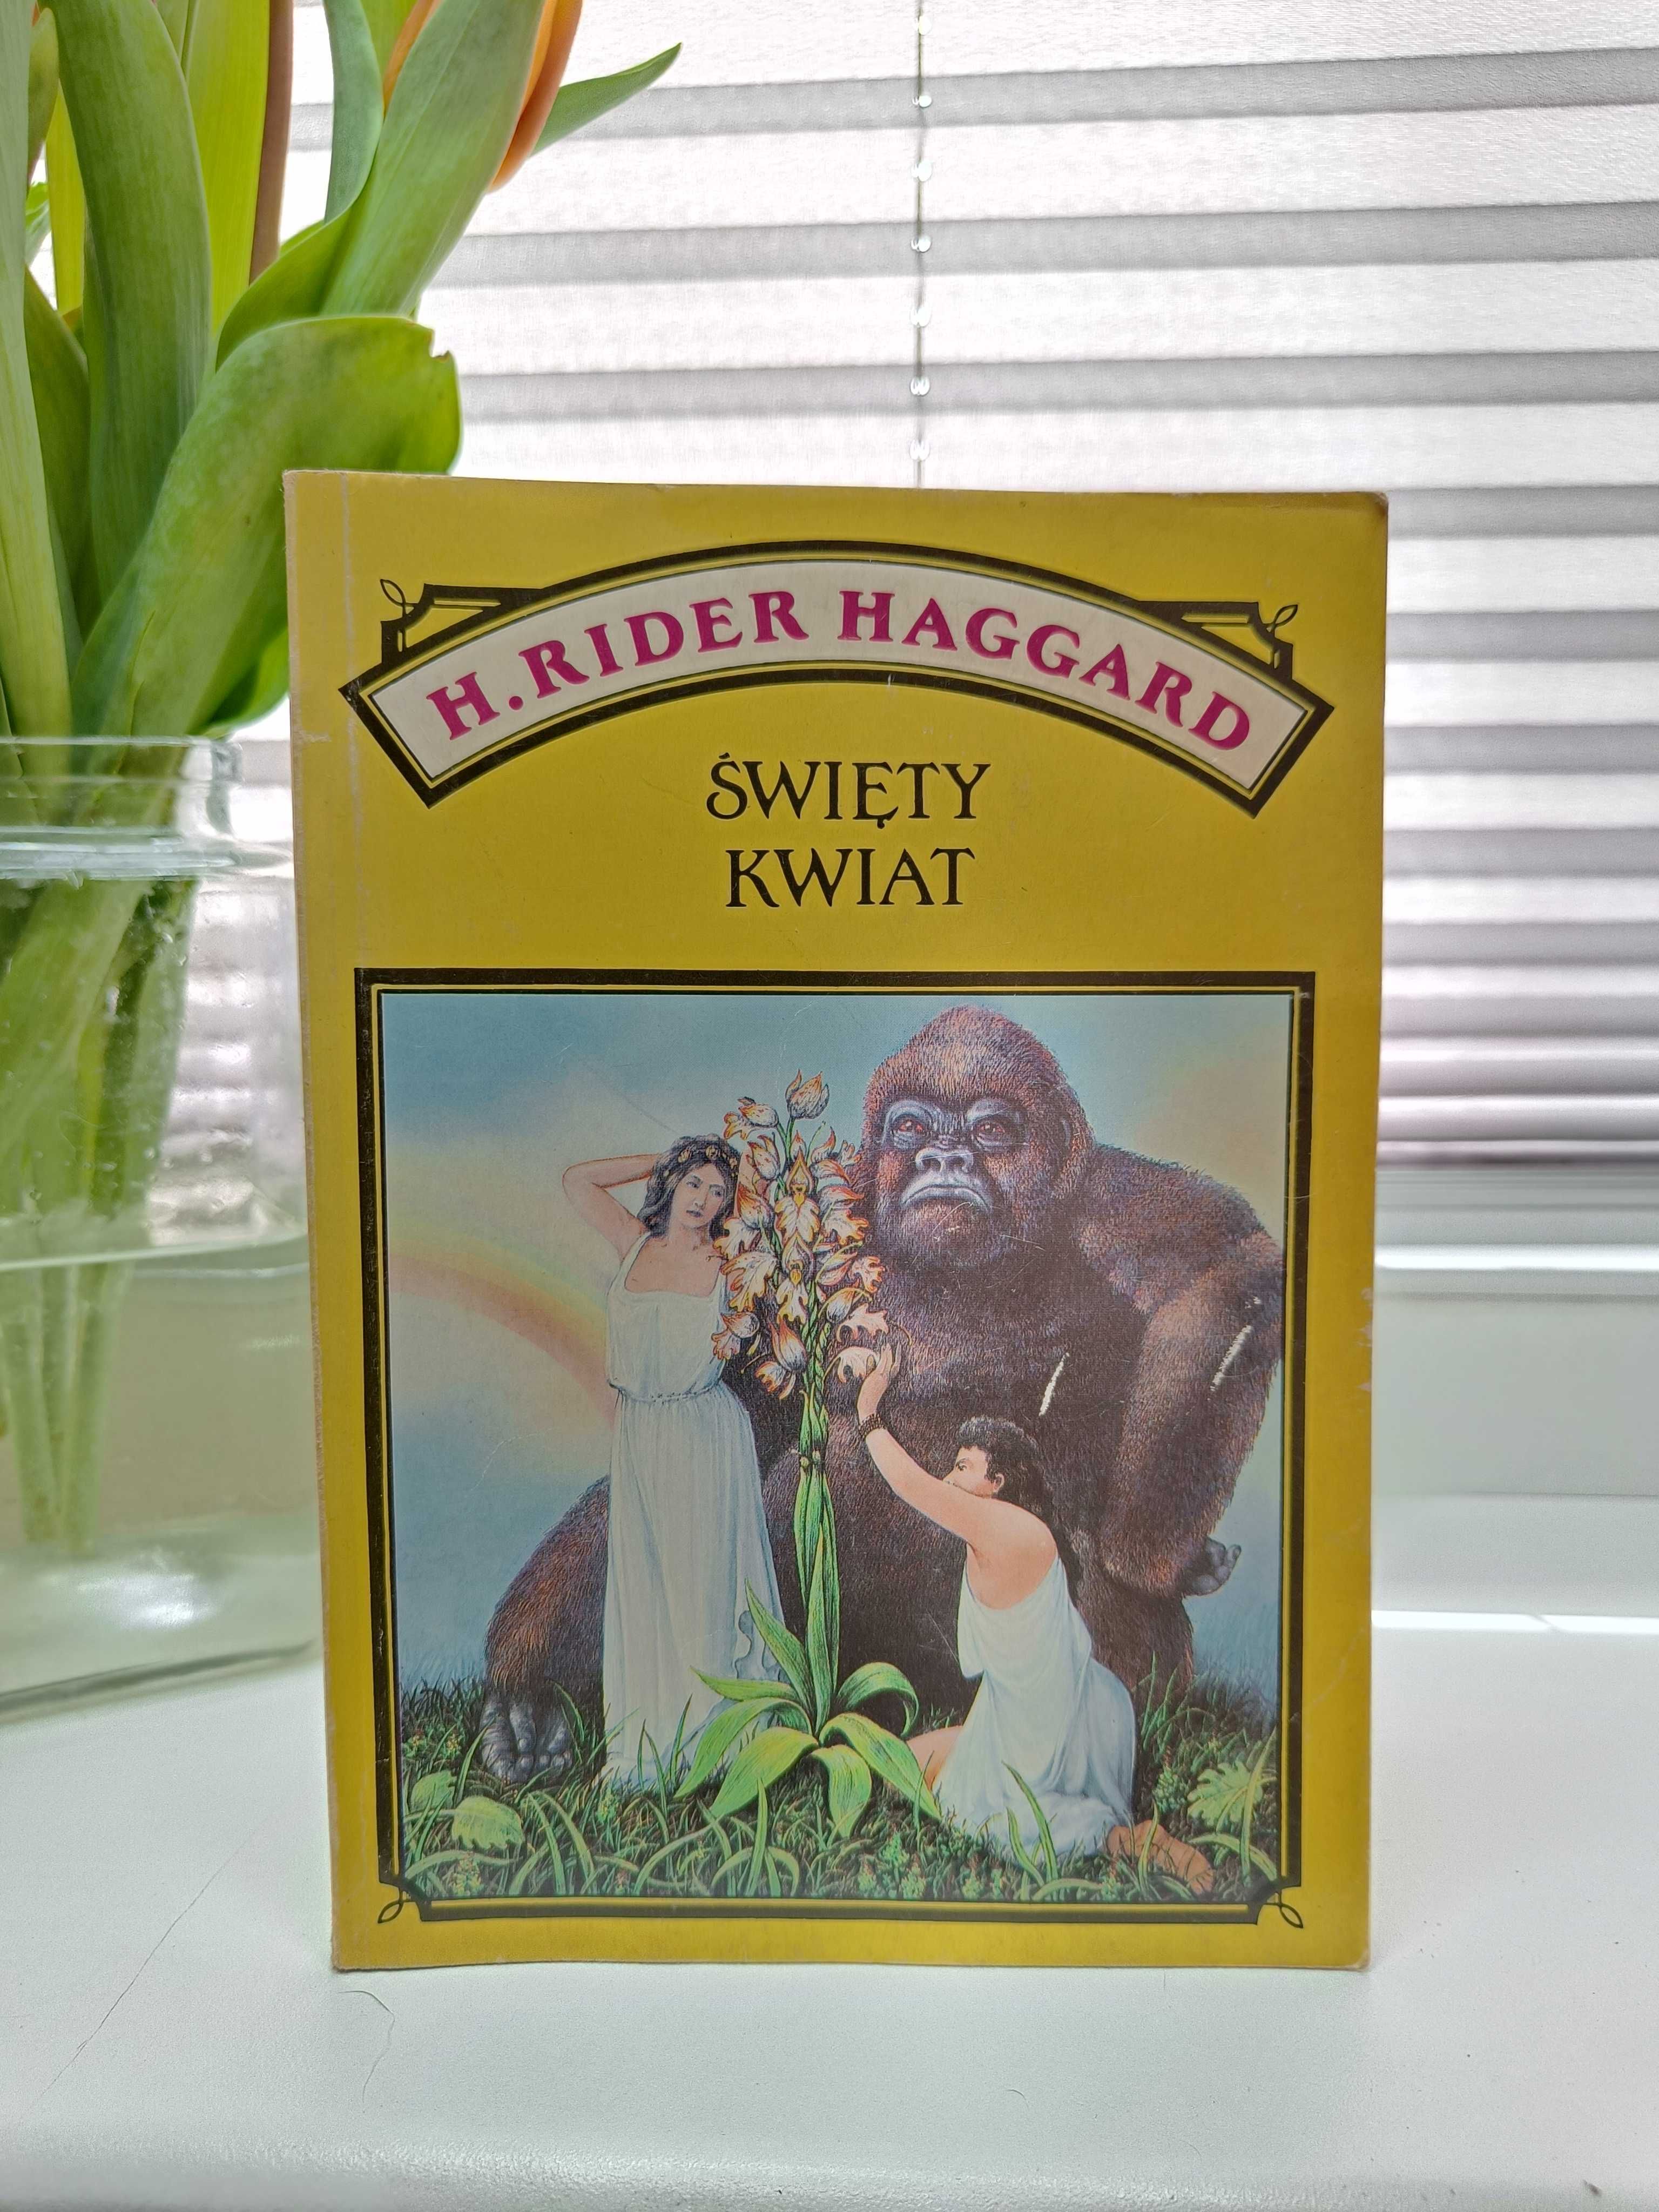 H. Rider Haggard "Święty kwiat"